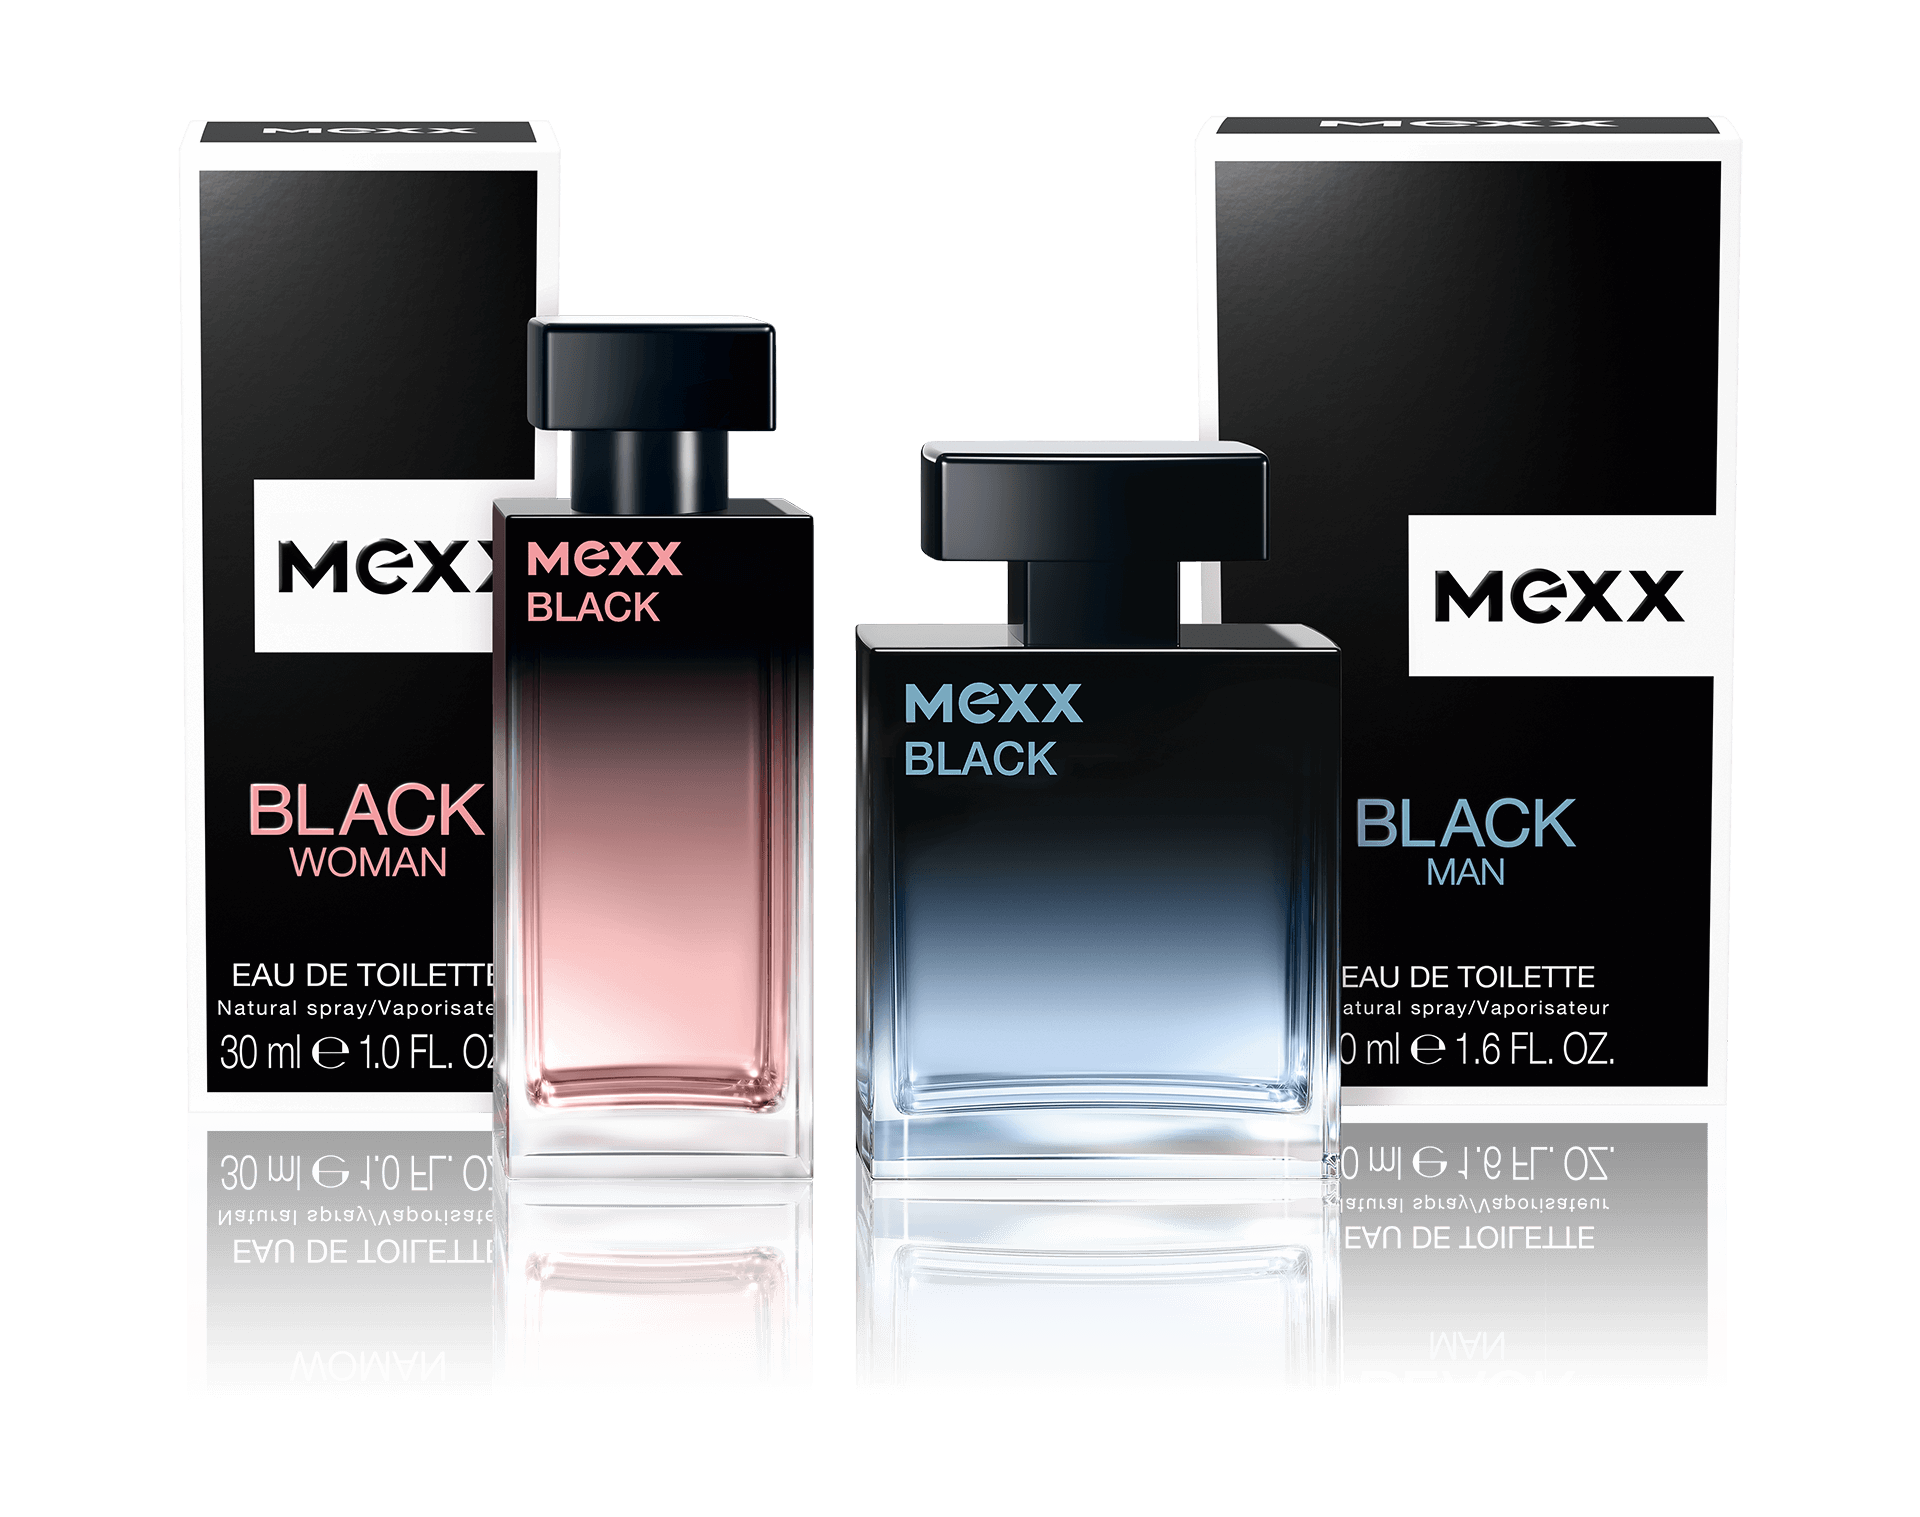 MEXX BLACK Packshots CGI